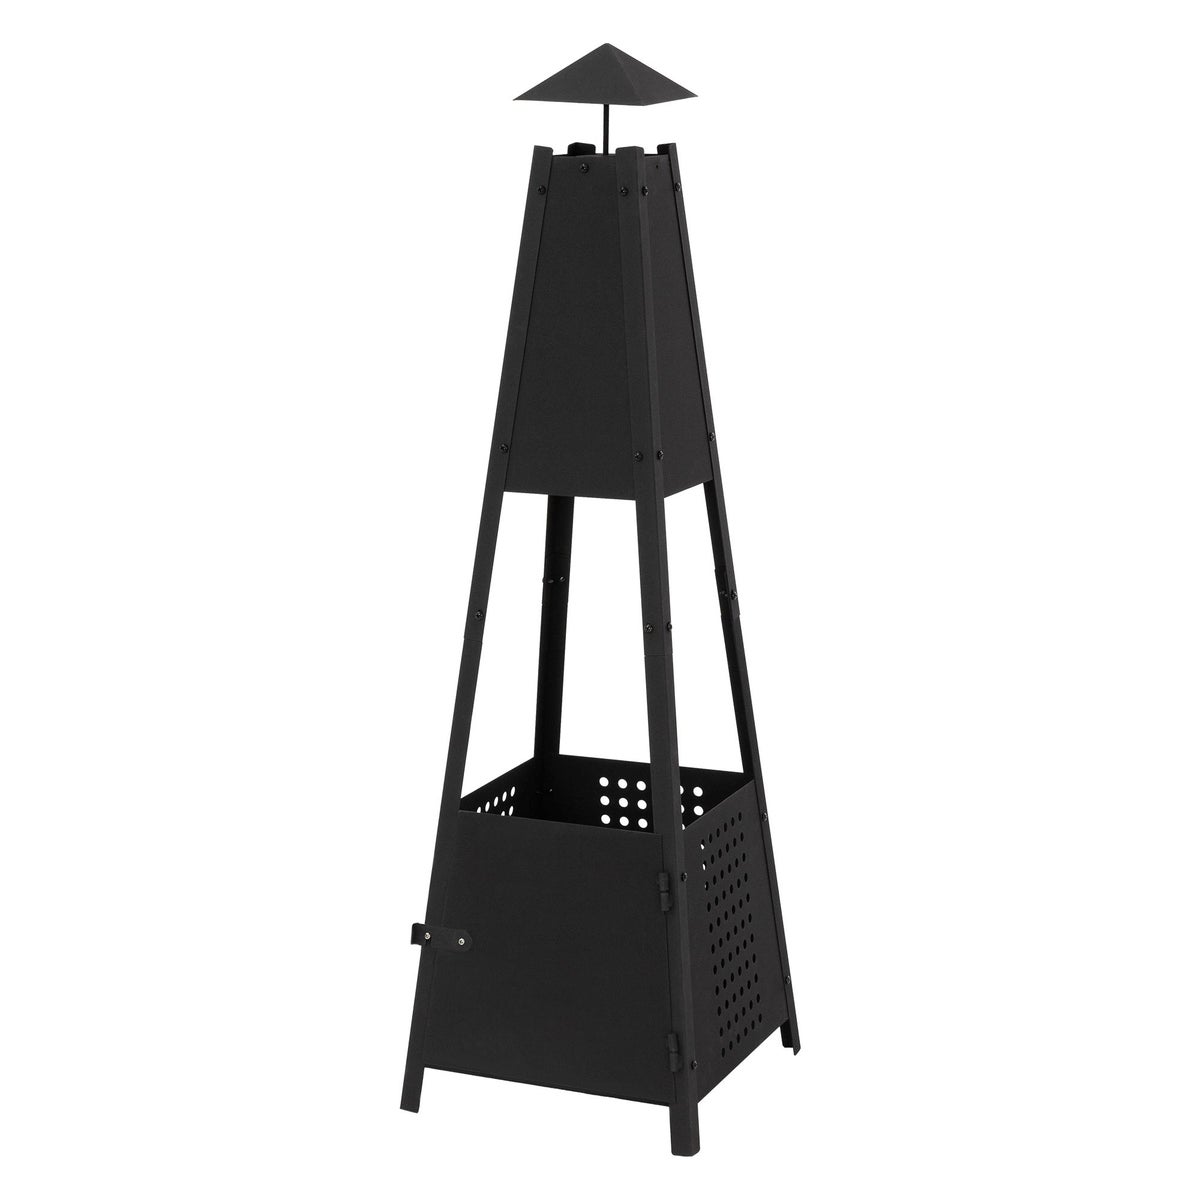 ML-Design Pyramiden Gartenkamin mit Schornstein aus Metall in Schwarz 100 cm hoch, Wetterfester Outdoor Terrassenofen/Terrassenkamin als Feuerschale oder Feuerkorb für Terrasse, Garten &amp; Camping